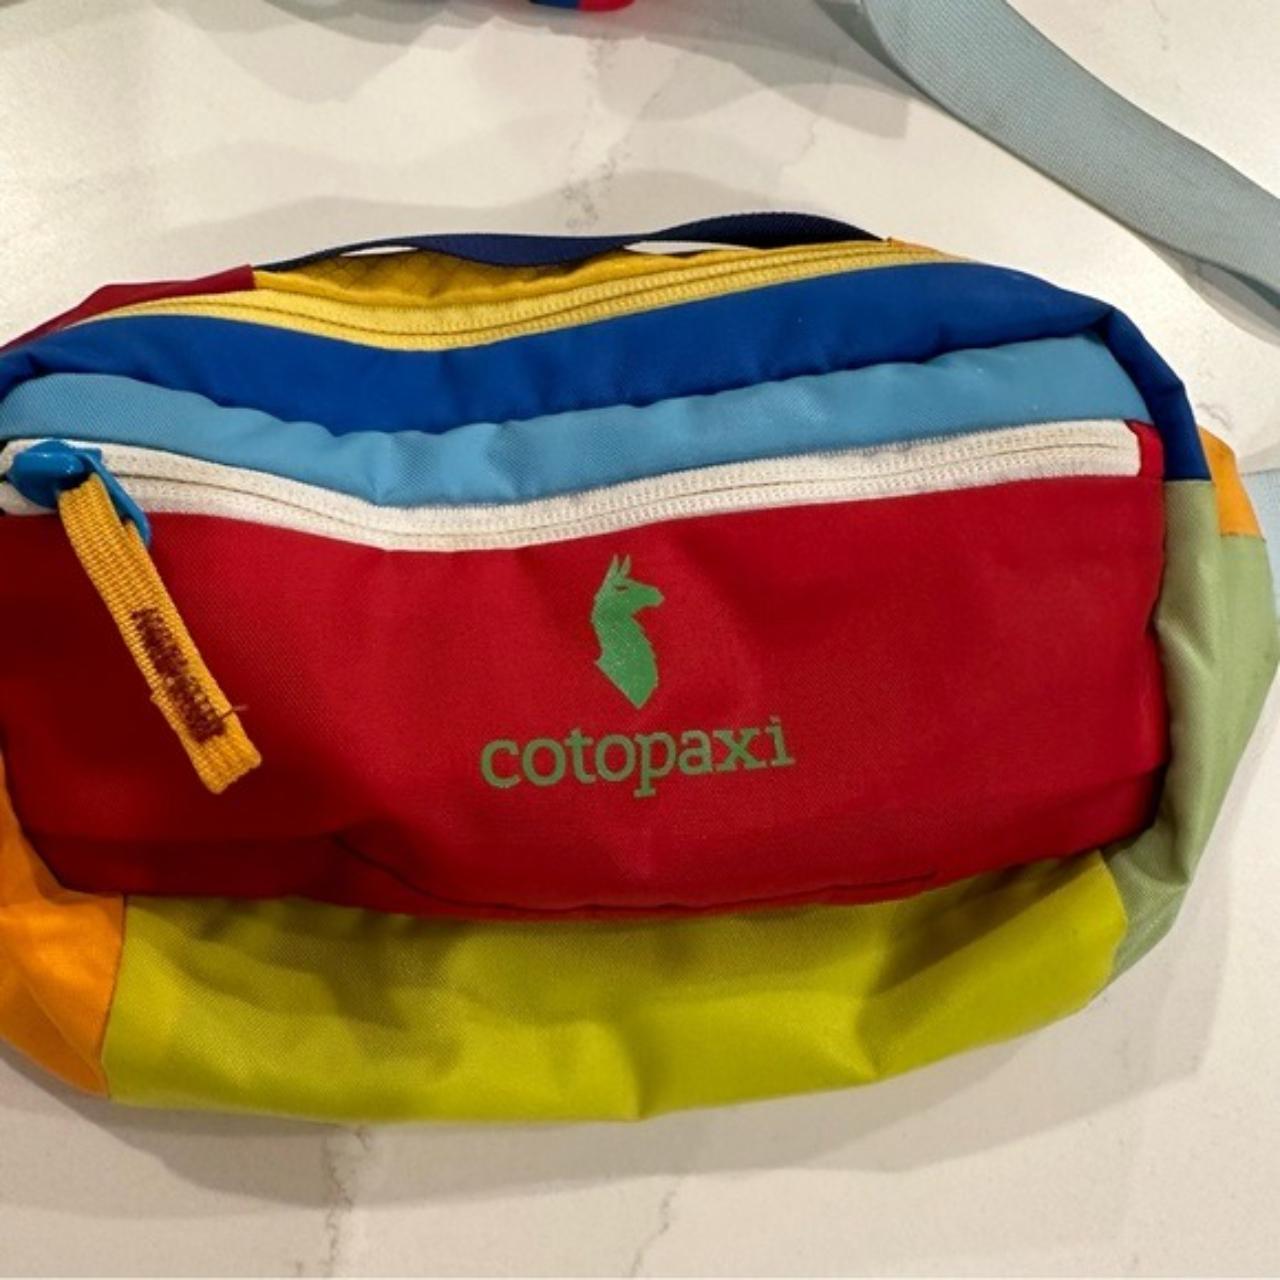 Cotopaxi 3L Hip Pack | Multicolor Sling Bag | Fanny... - Depop